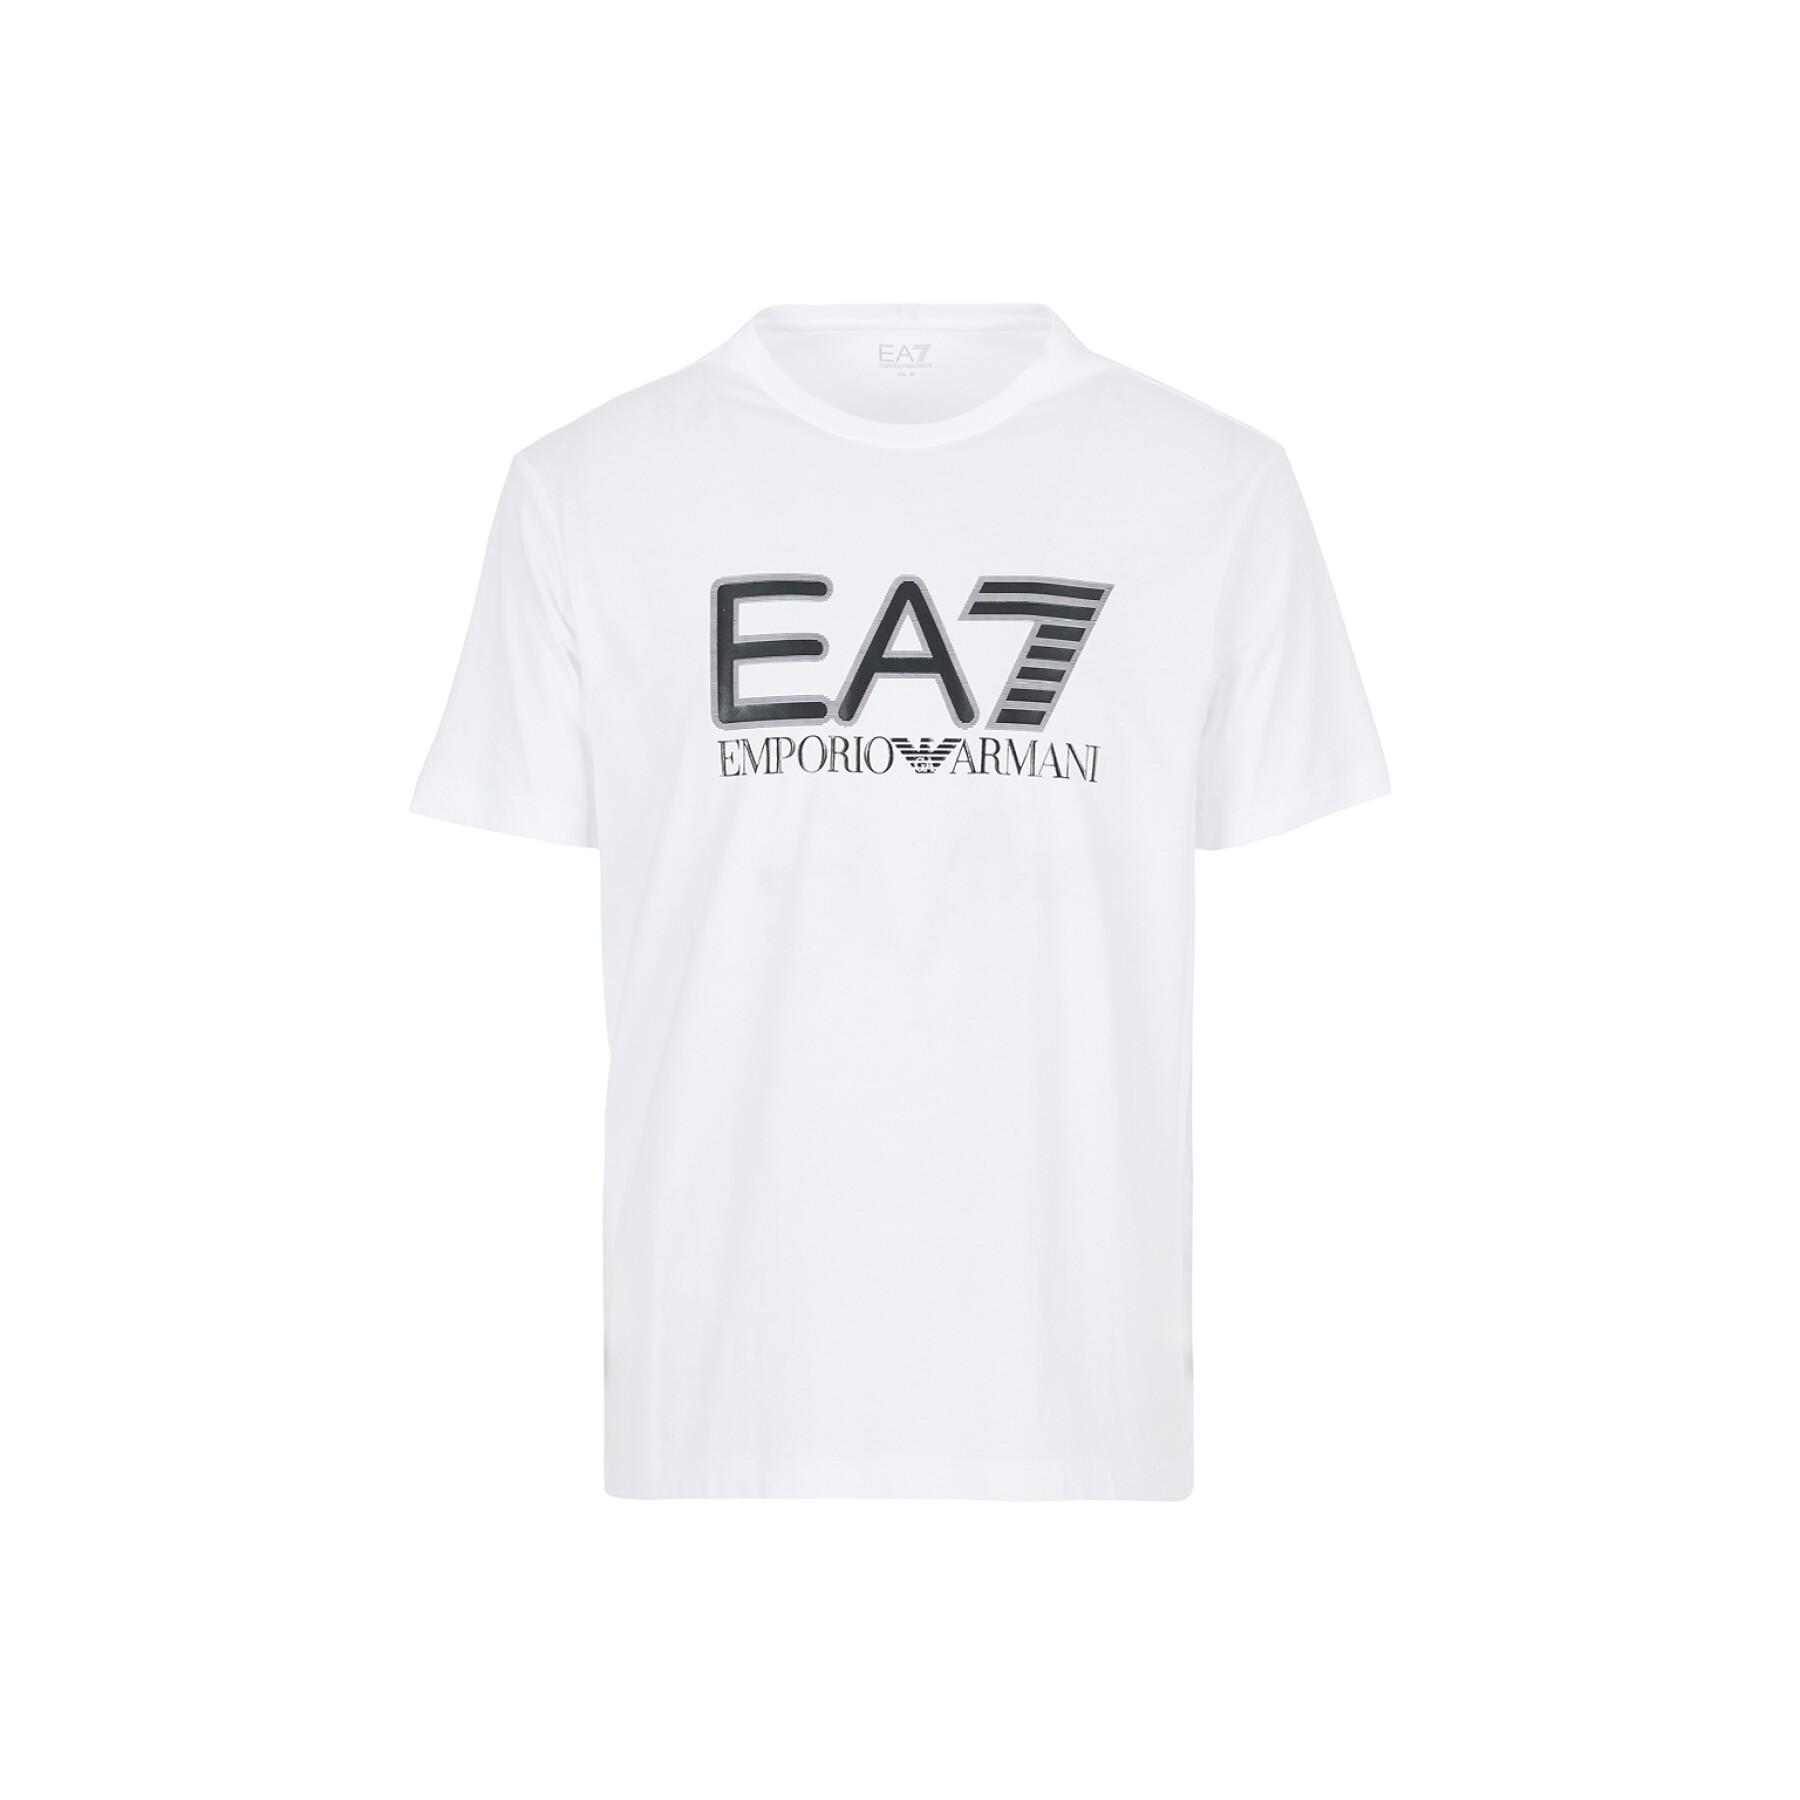 Camiseta EA7 Emporio Armani 6KPT81-PJM9Z blanco